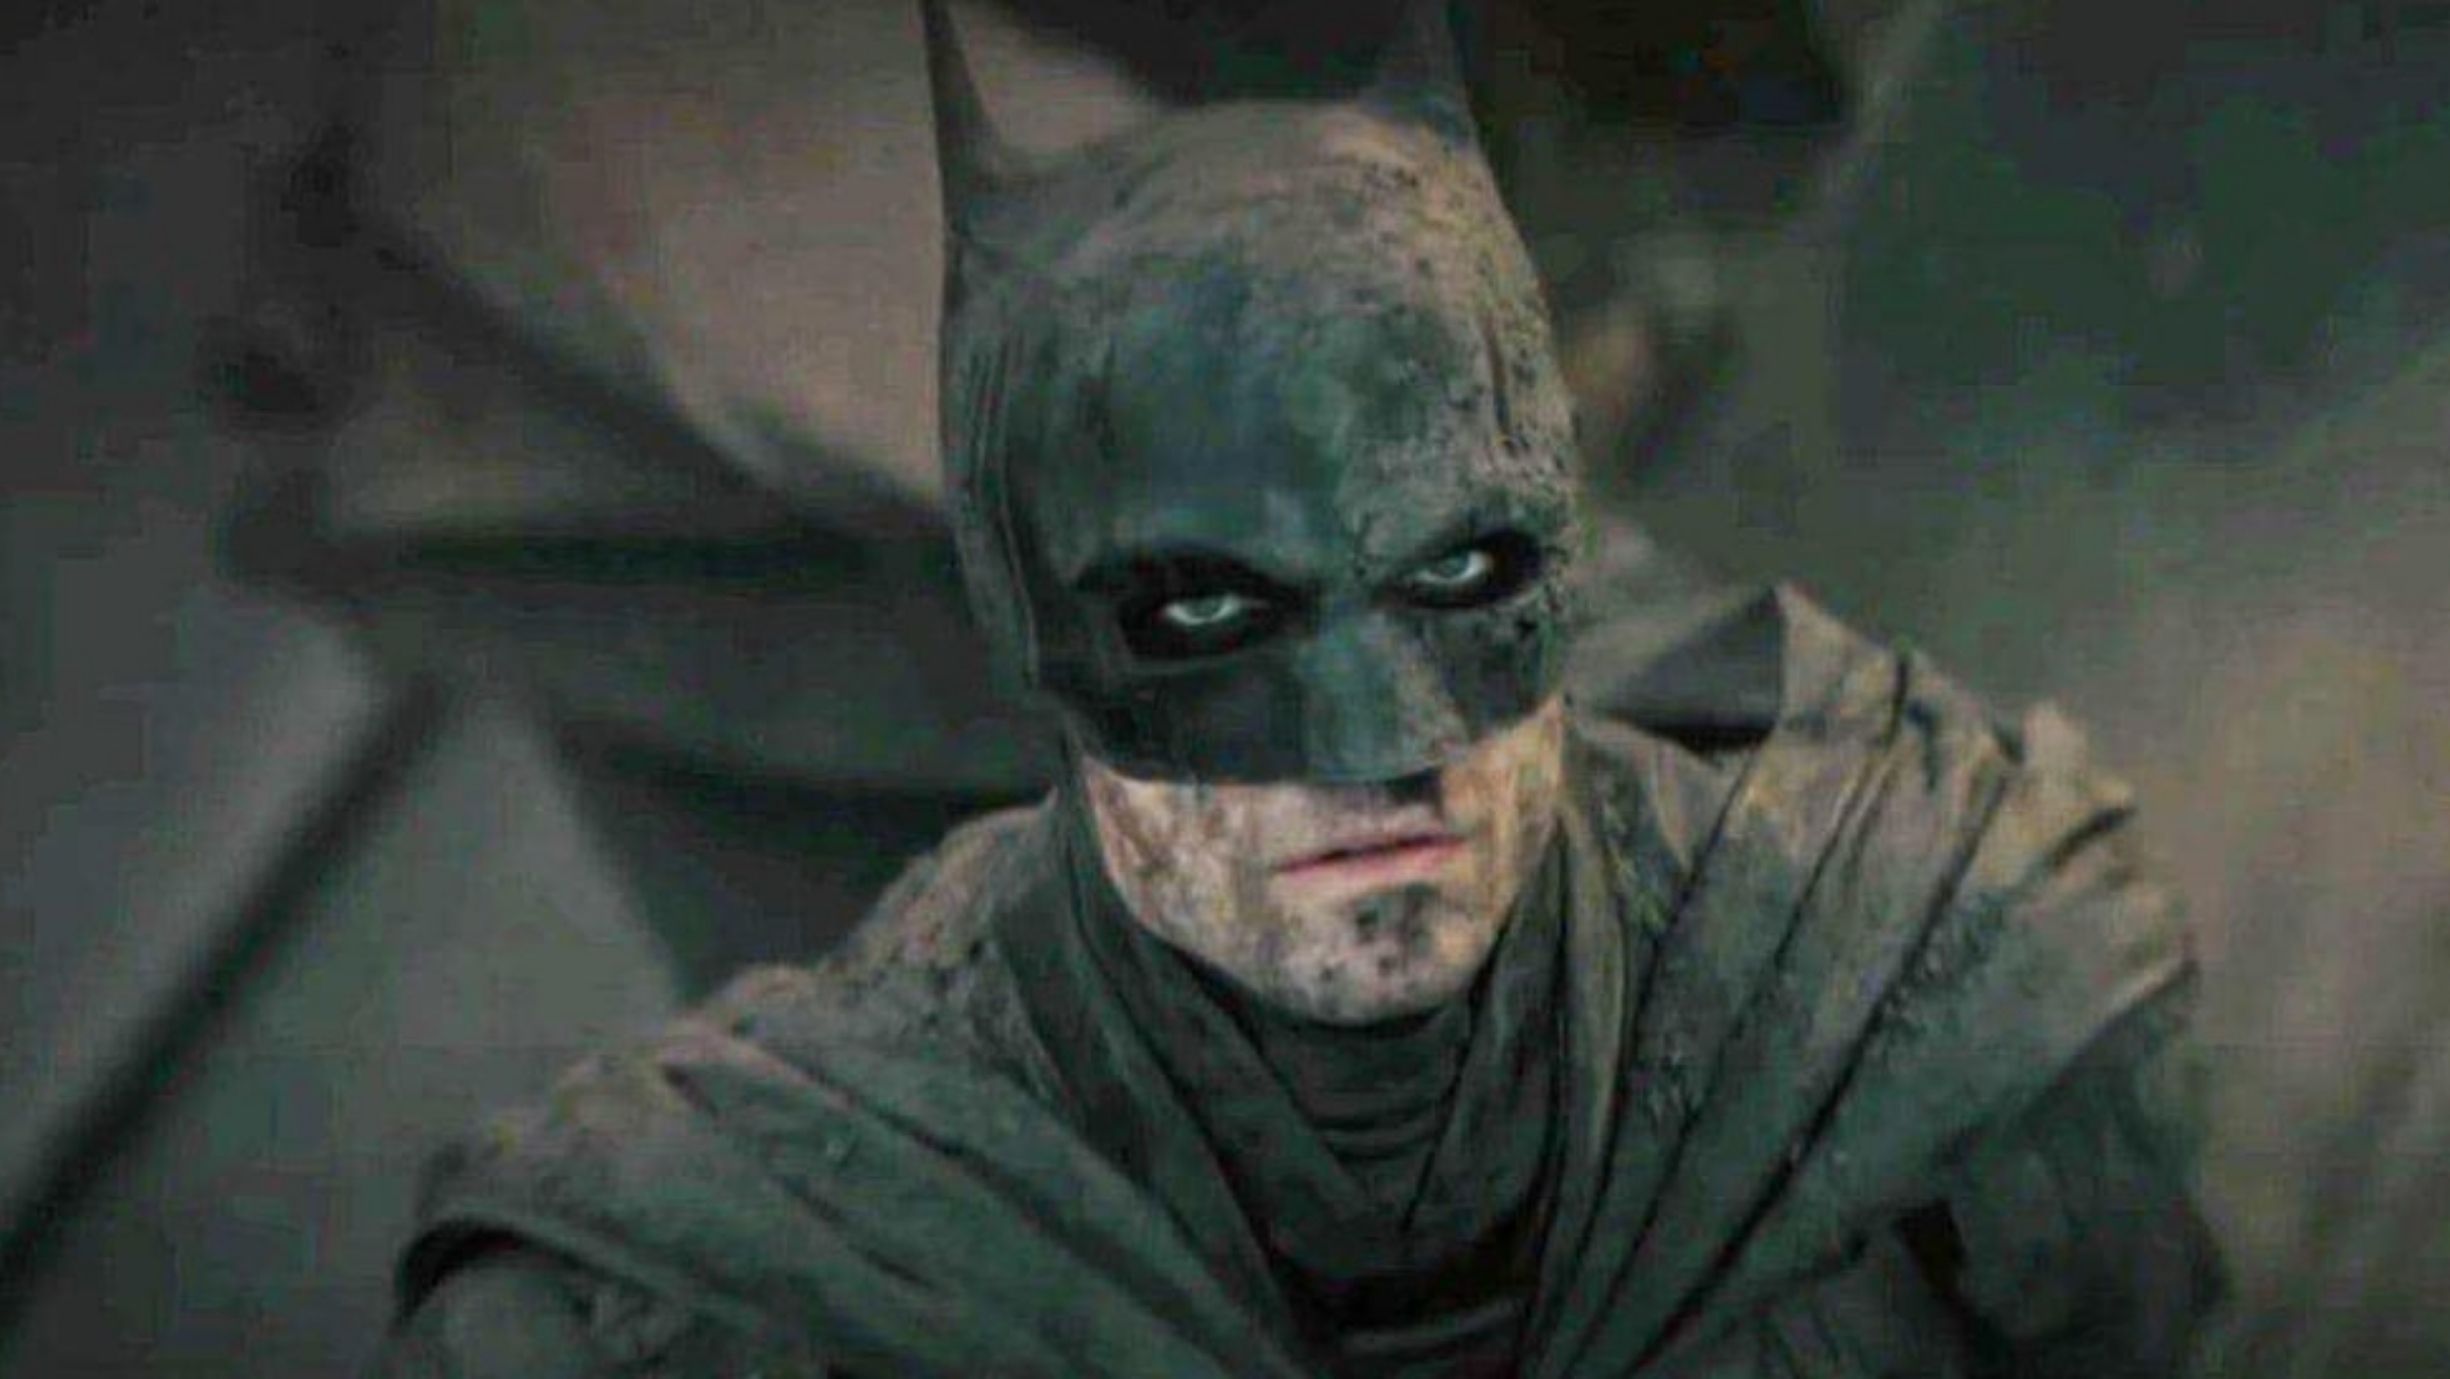 Robert Pattinson caracterizado como Batman para novo filme - Divulgação